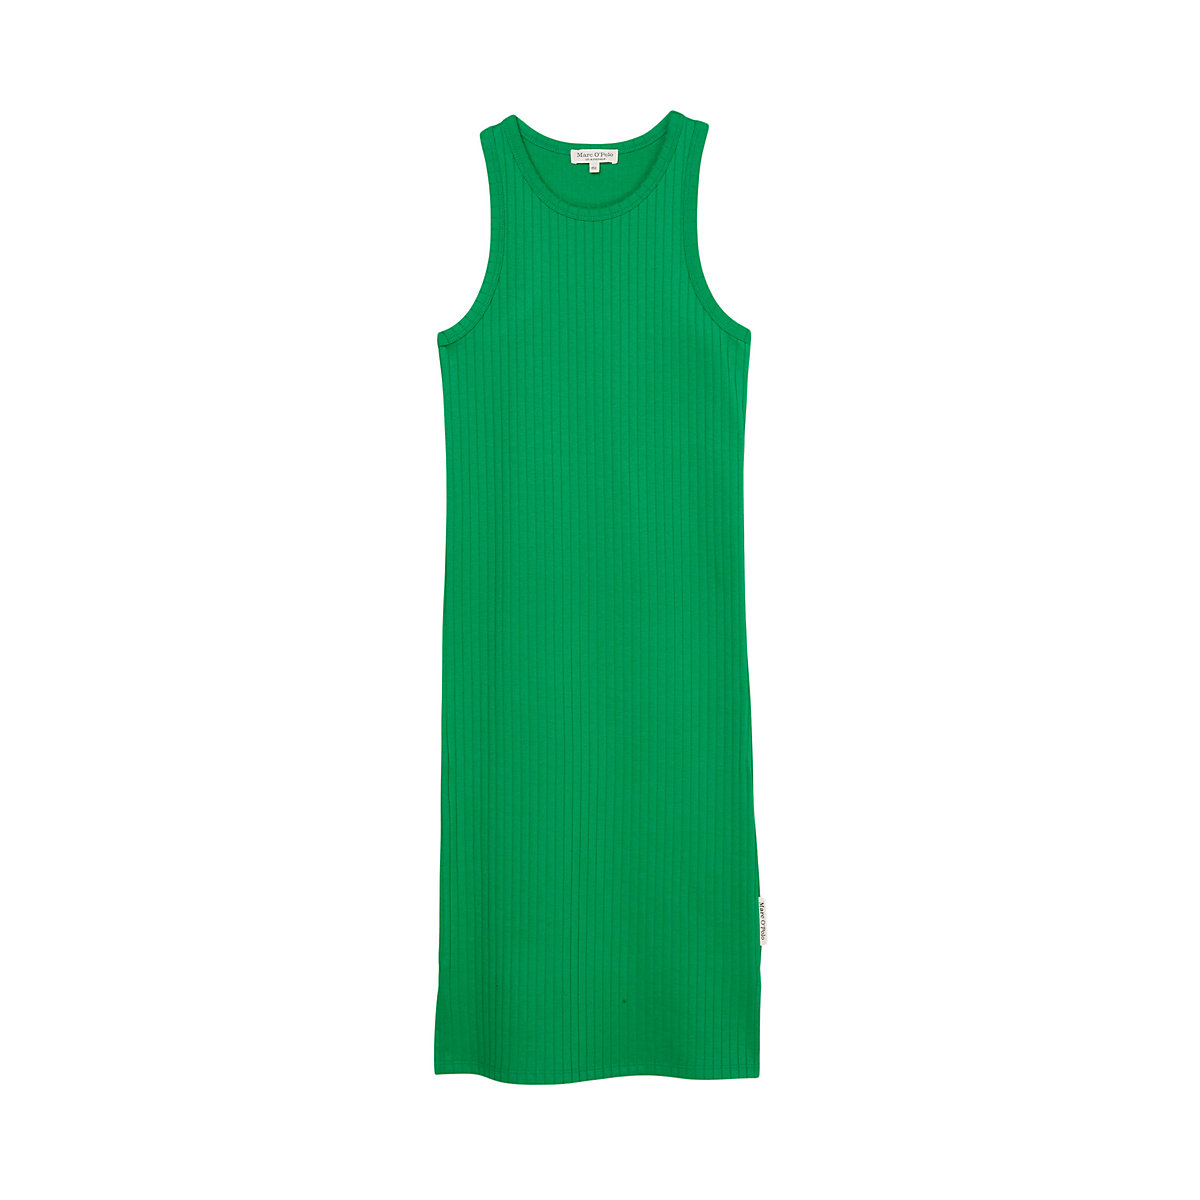 Marc O'Polo TEENS-GIRLS Trägerkleid mit elastischer Ripp-Struktur Sweatkleider grün